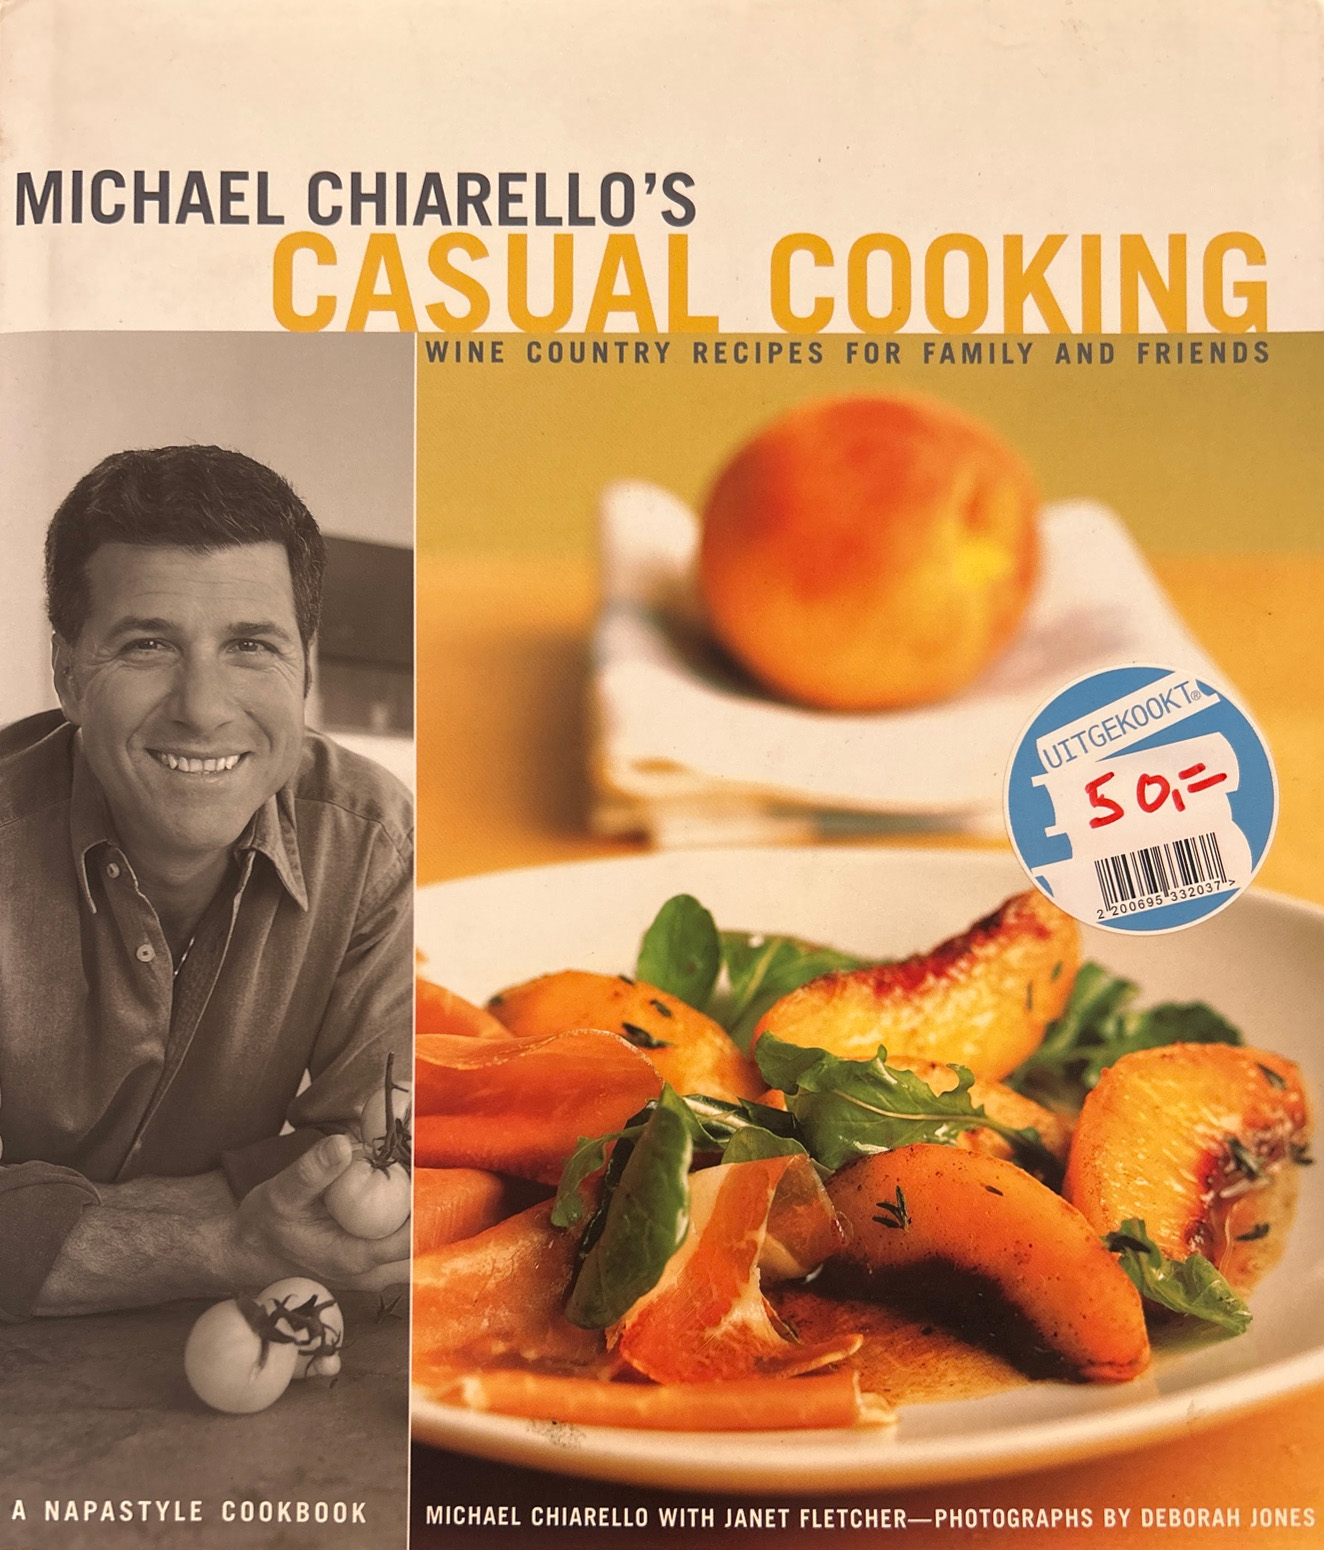 Casual cooking – Michael Chiarello’s